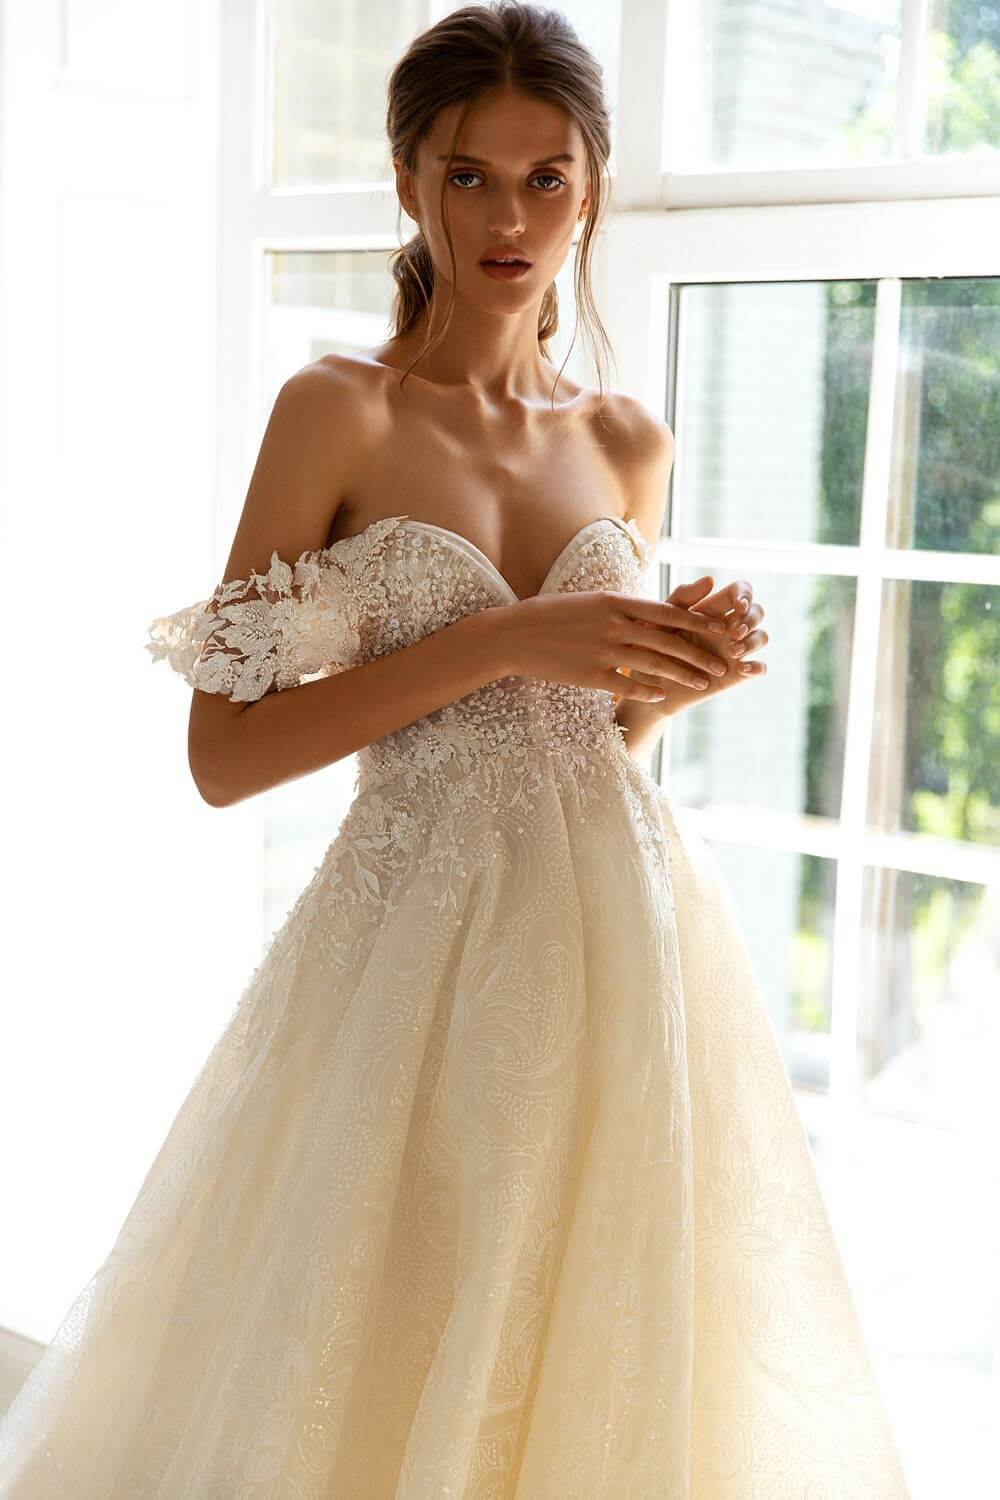 Vestido de novia: Madeira by WONÁ Concept exclusivos diseñadores de moda en Europa: Bridal Room Boutique es distribuidor oficial y autorizado, consíguelo en nuestras boutiques al mejor precio